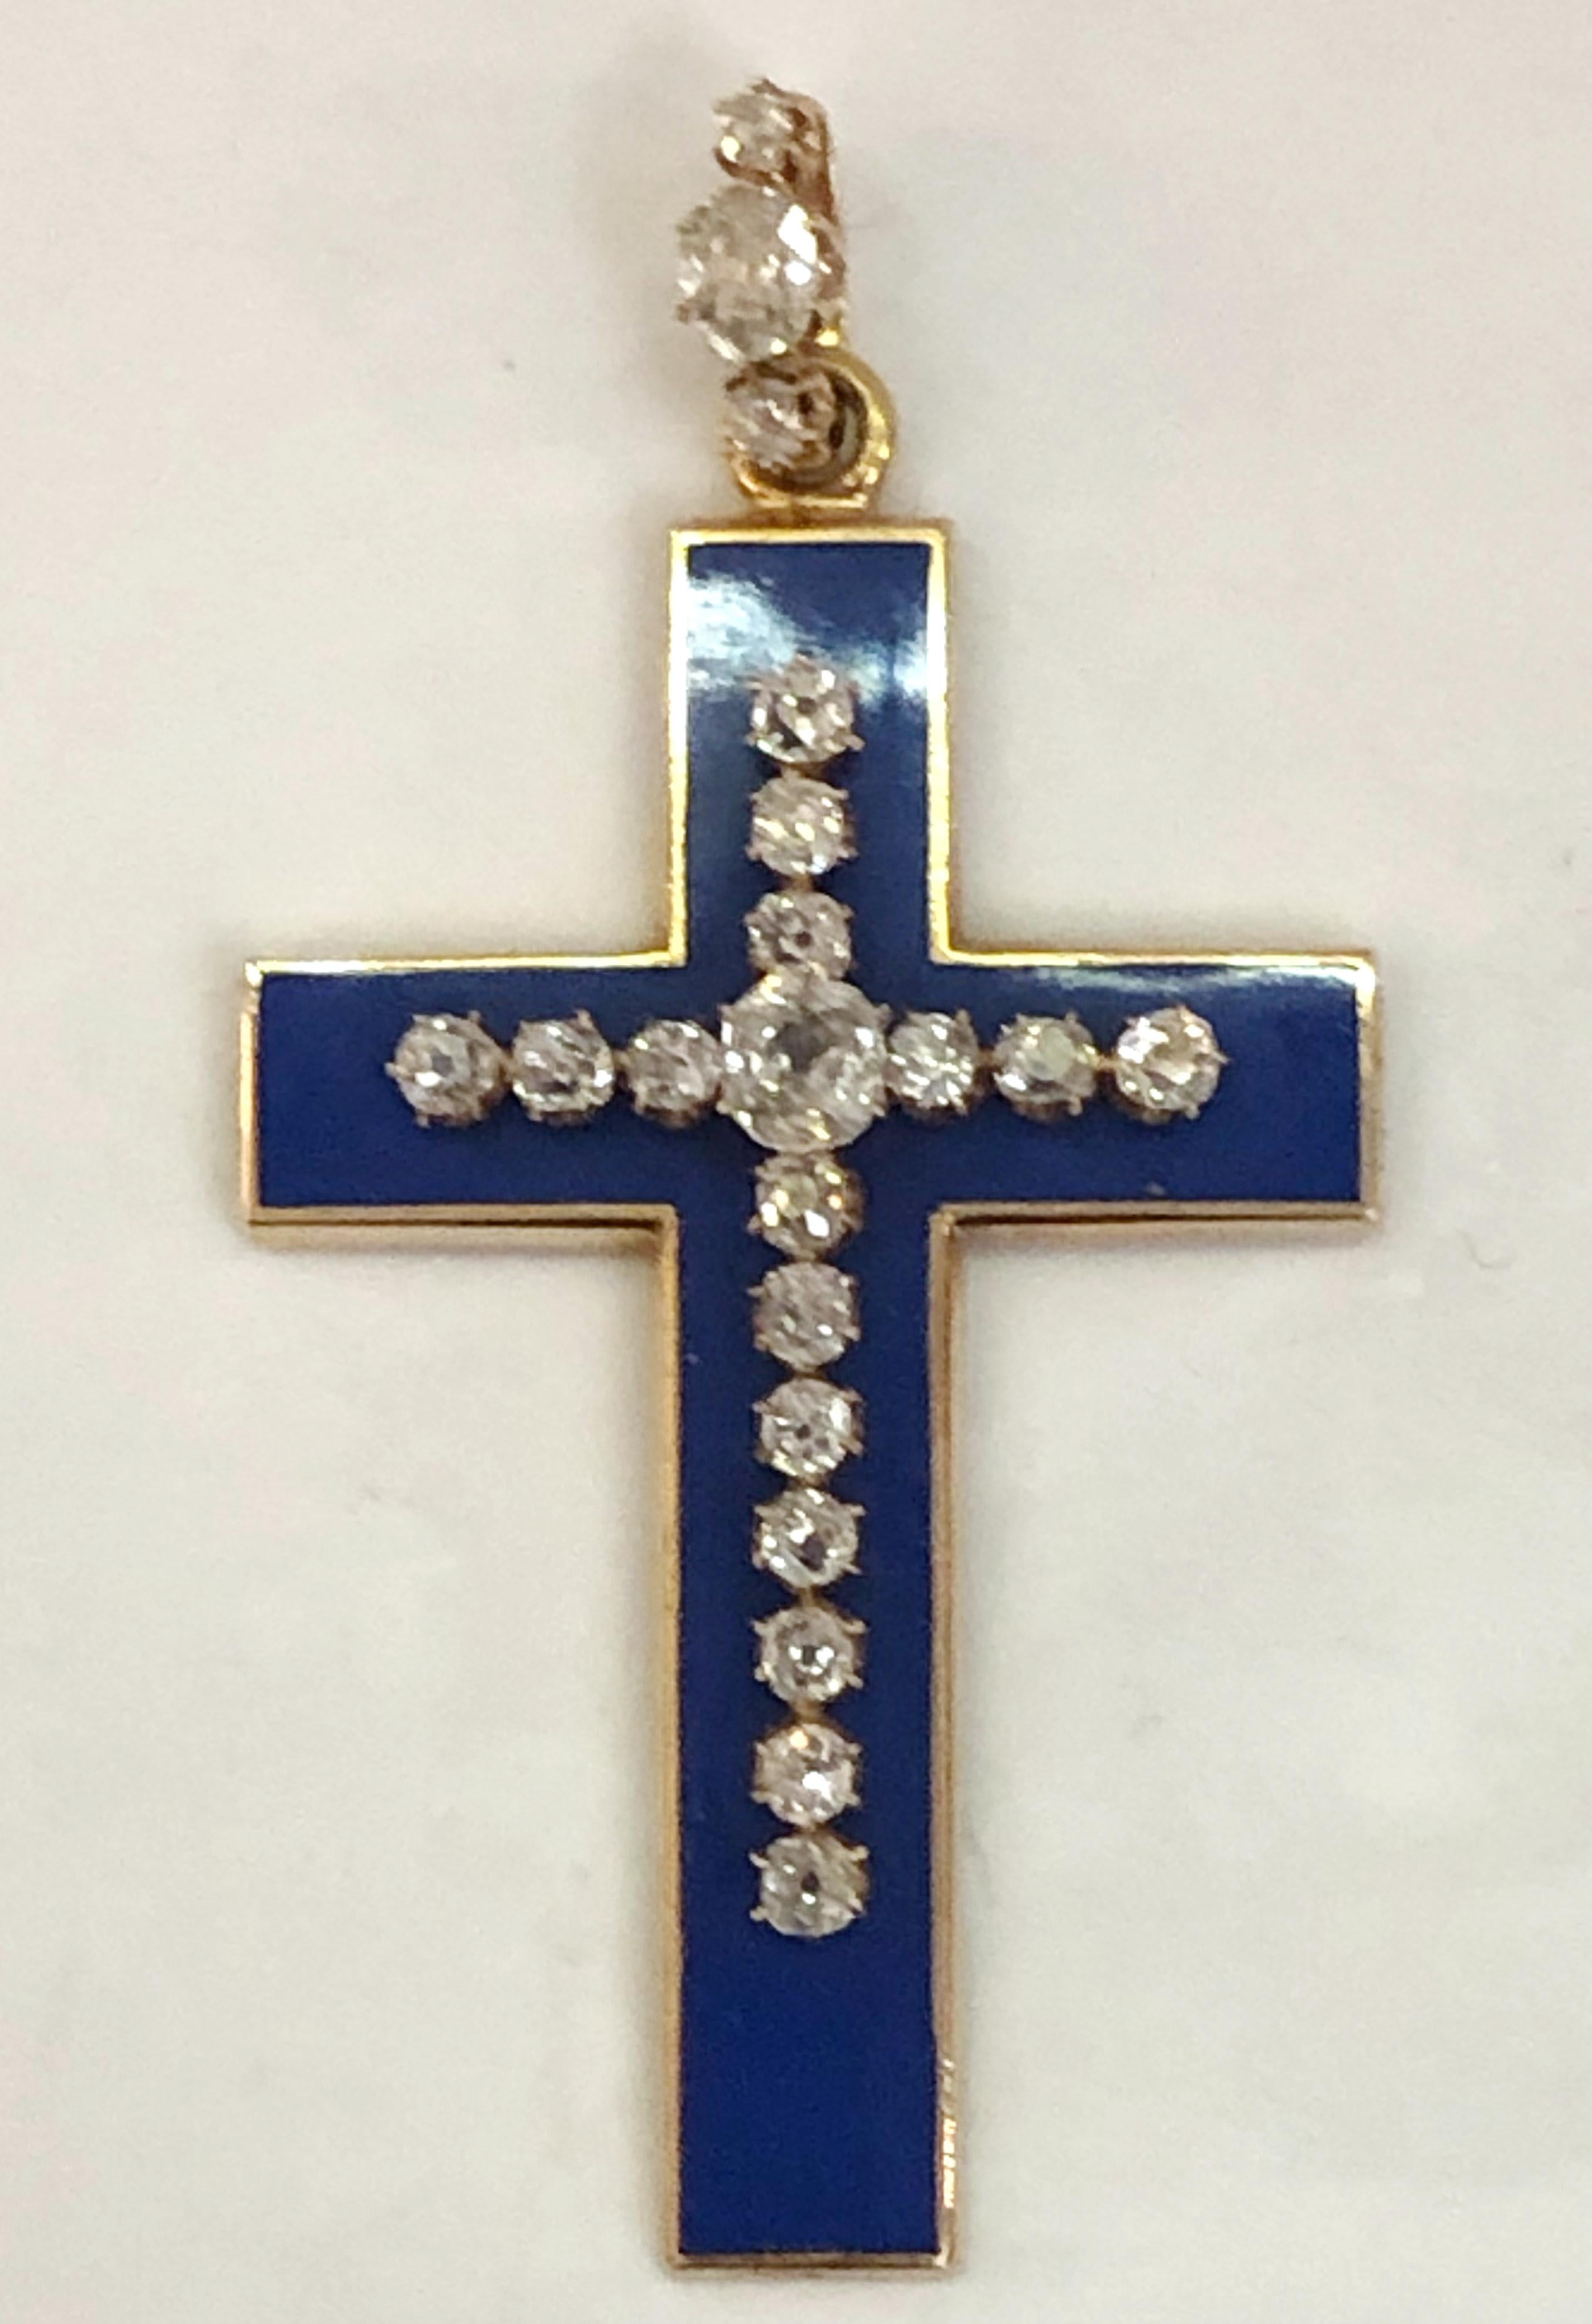 Vieux collier pendentif croix en or rose 18 carats avec émail bleu et diamants pour un total de 3 carats, Italie 1860-1880s